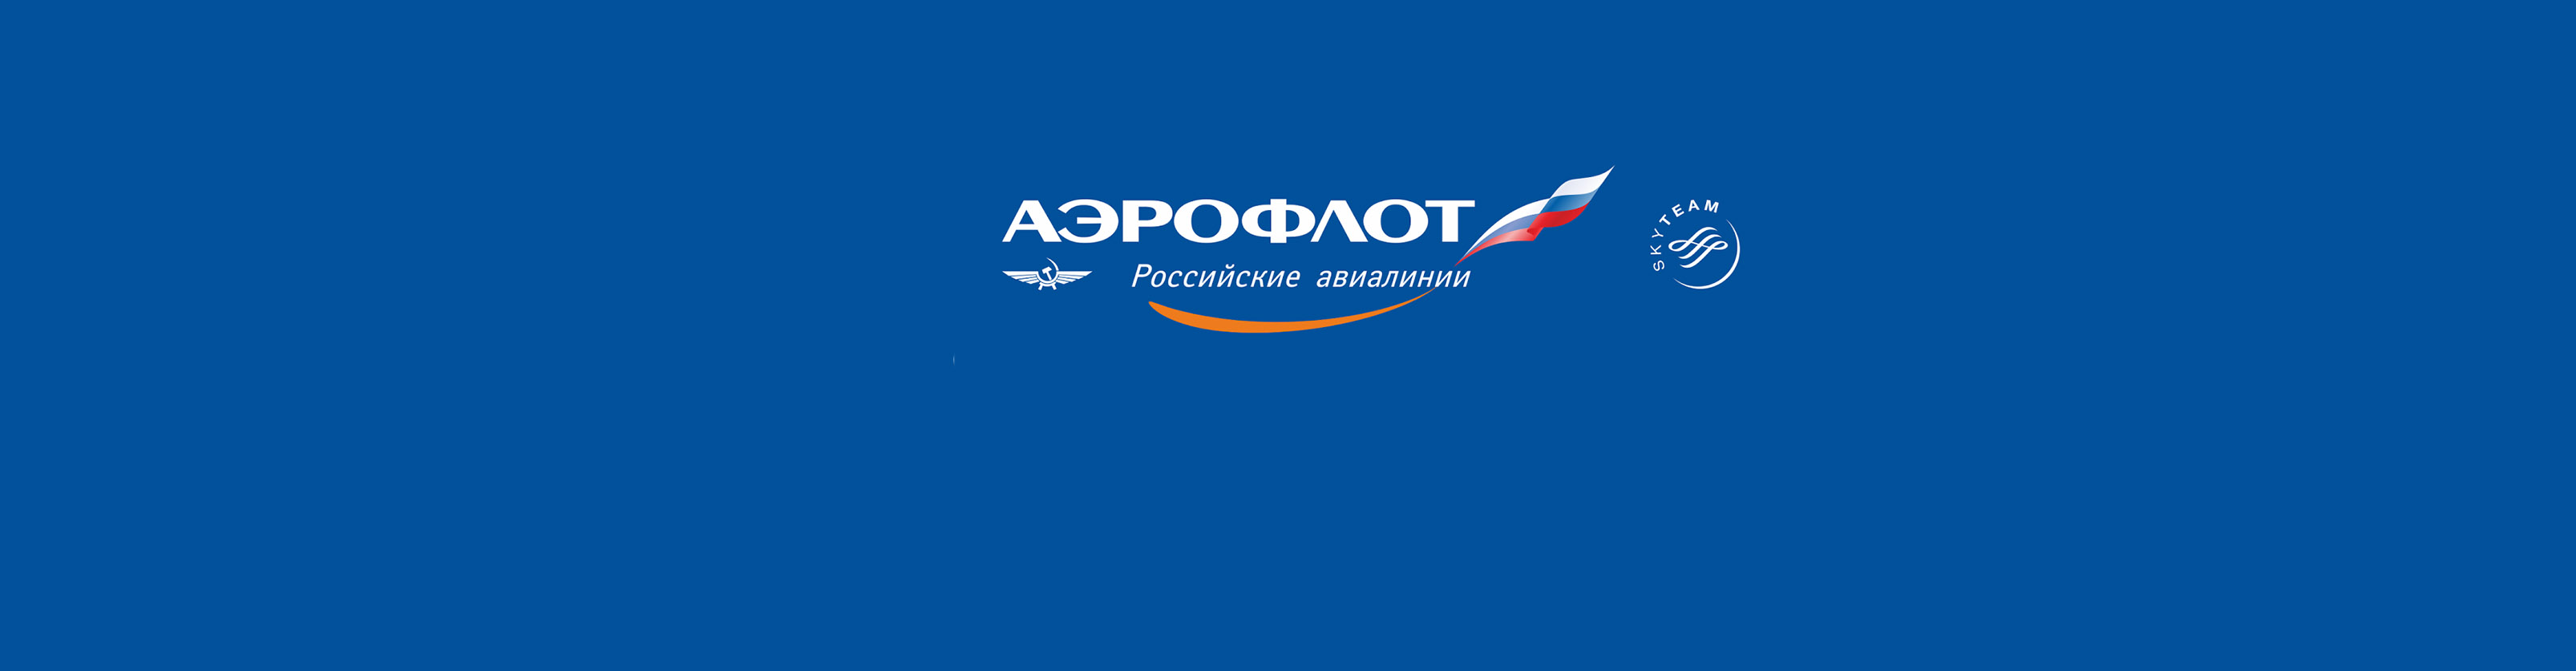 アエロフロート・ロシア航空画像2